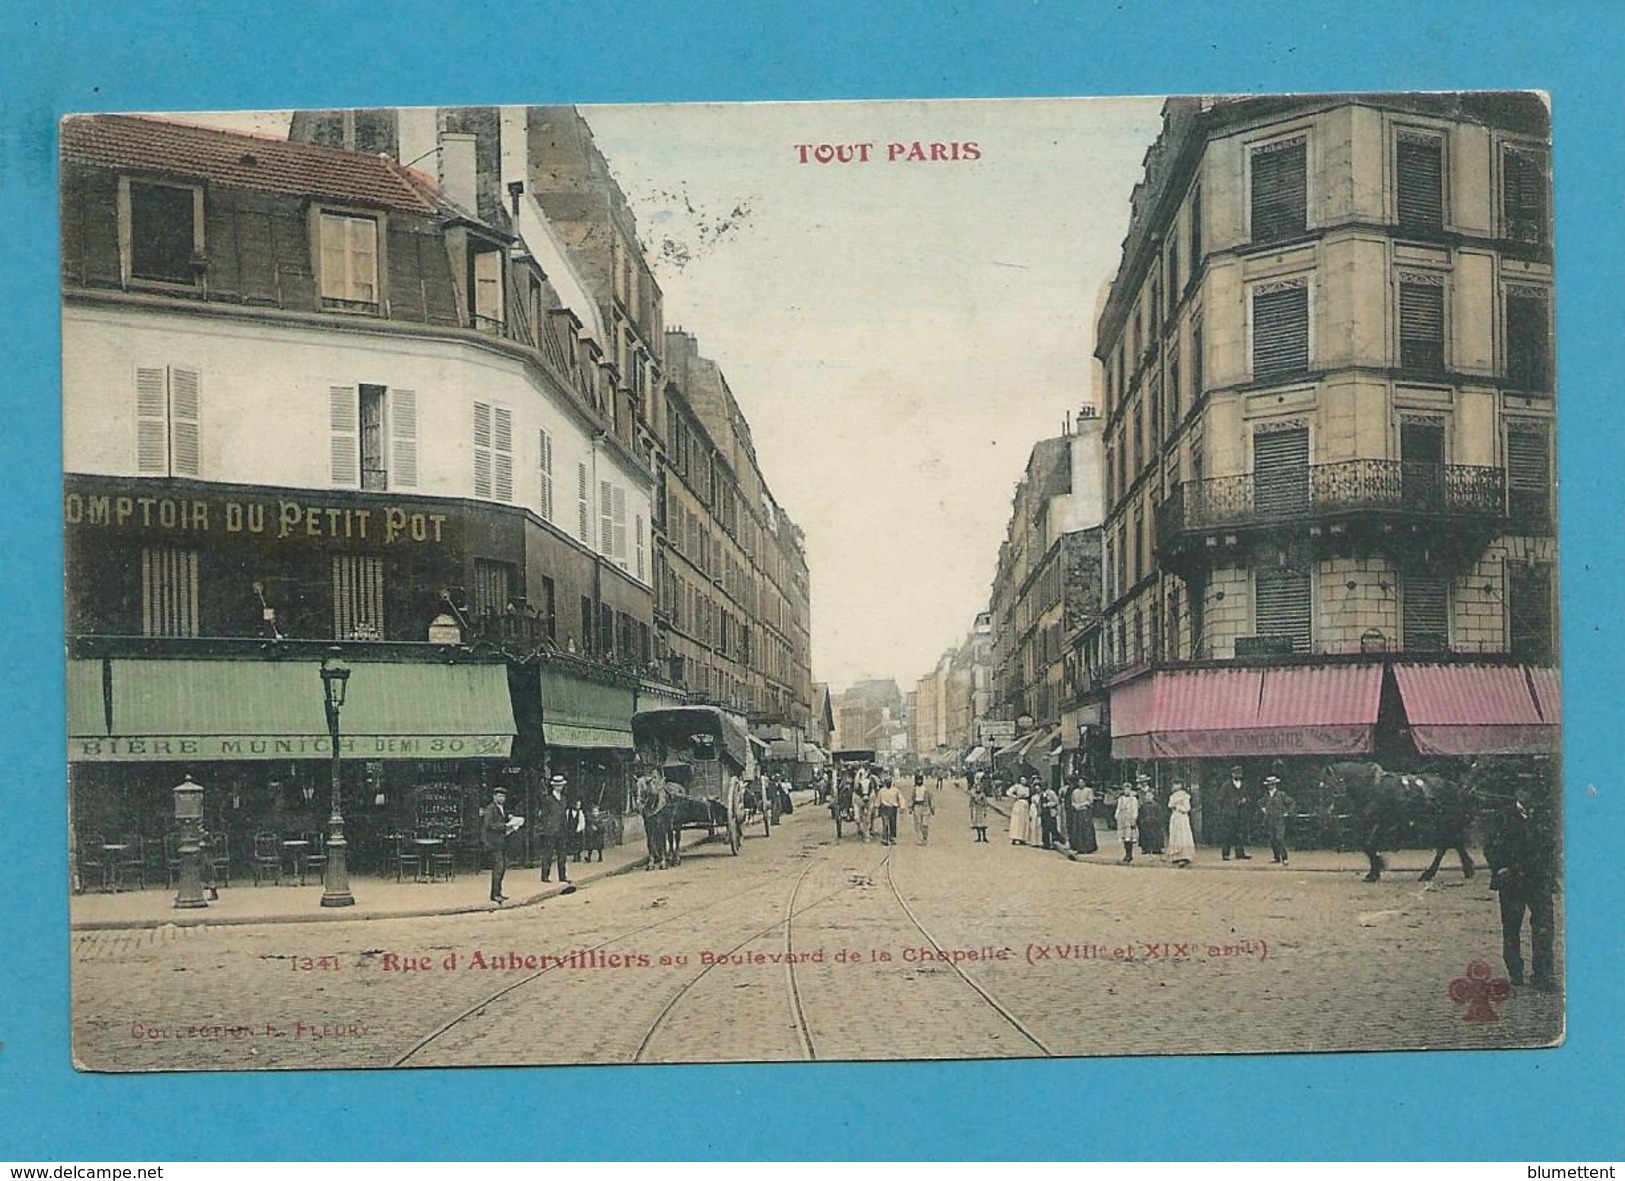 CPA TOUT PARIS 1341 - Rue D'Aubervilliers (XVIIIème Arrt.) Ed. FLEURY - District 18